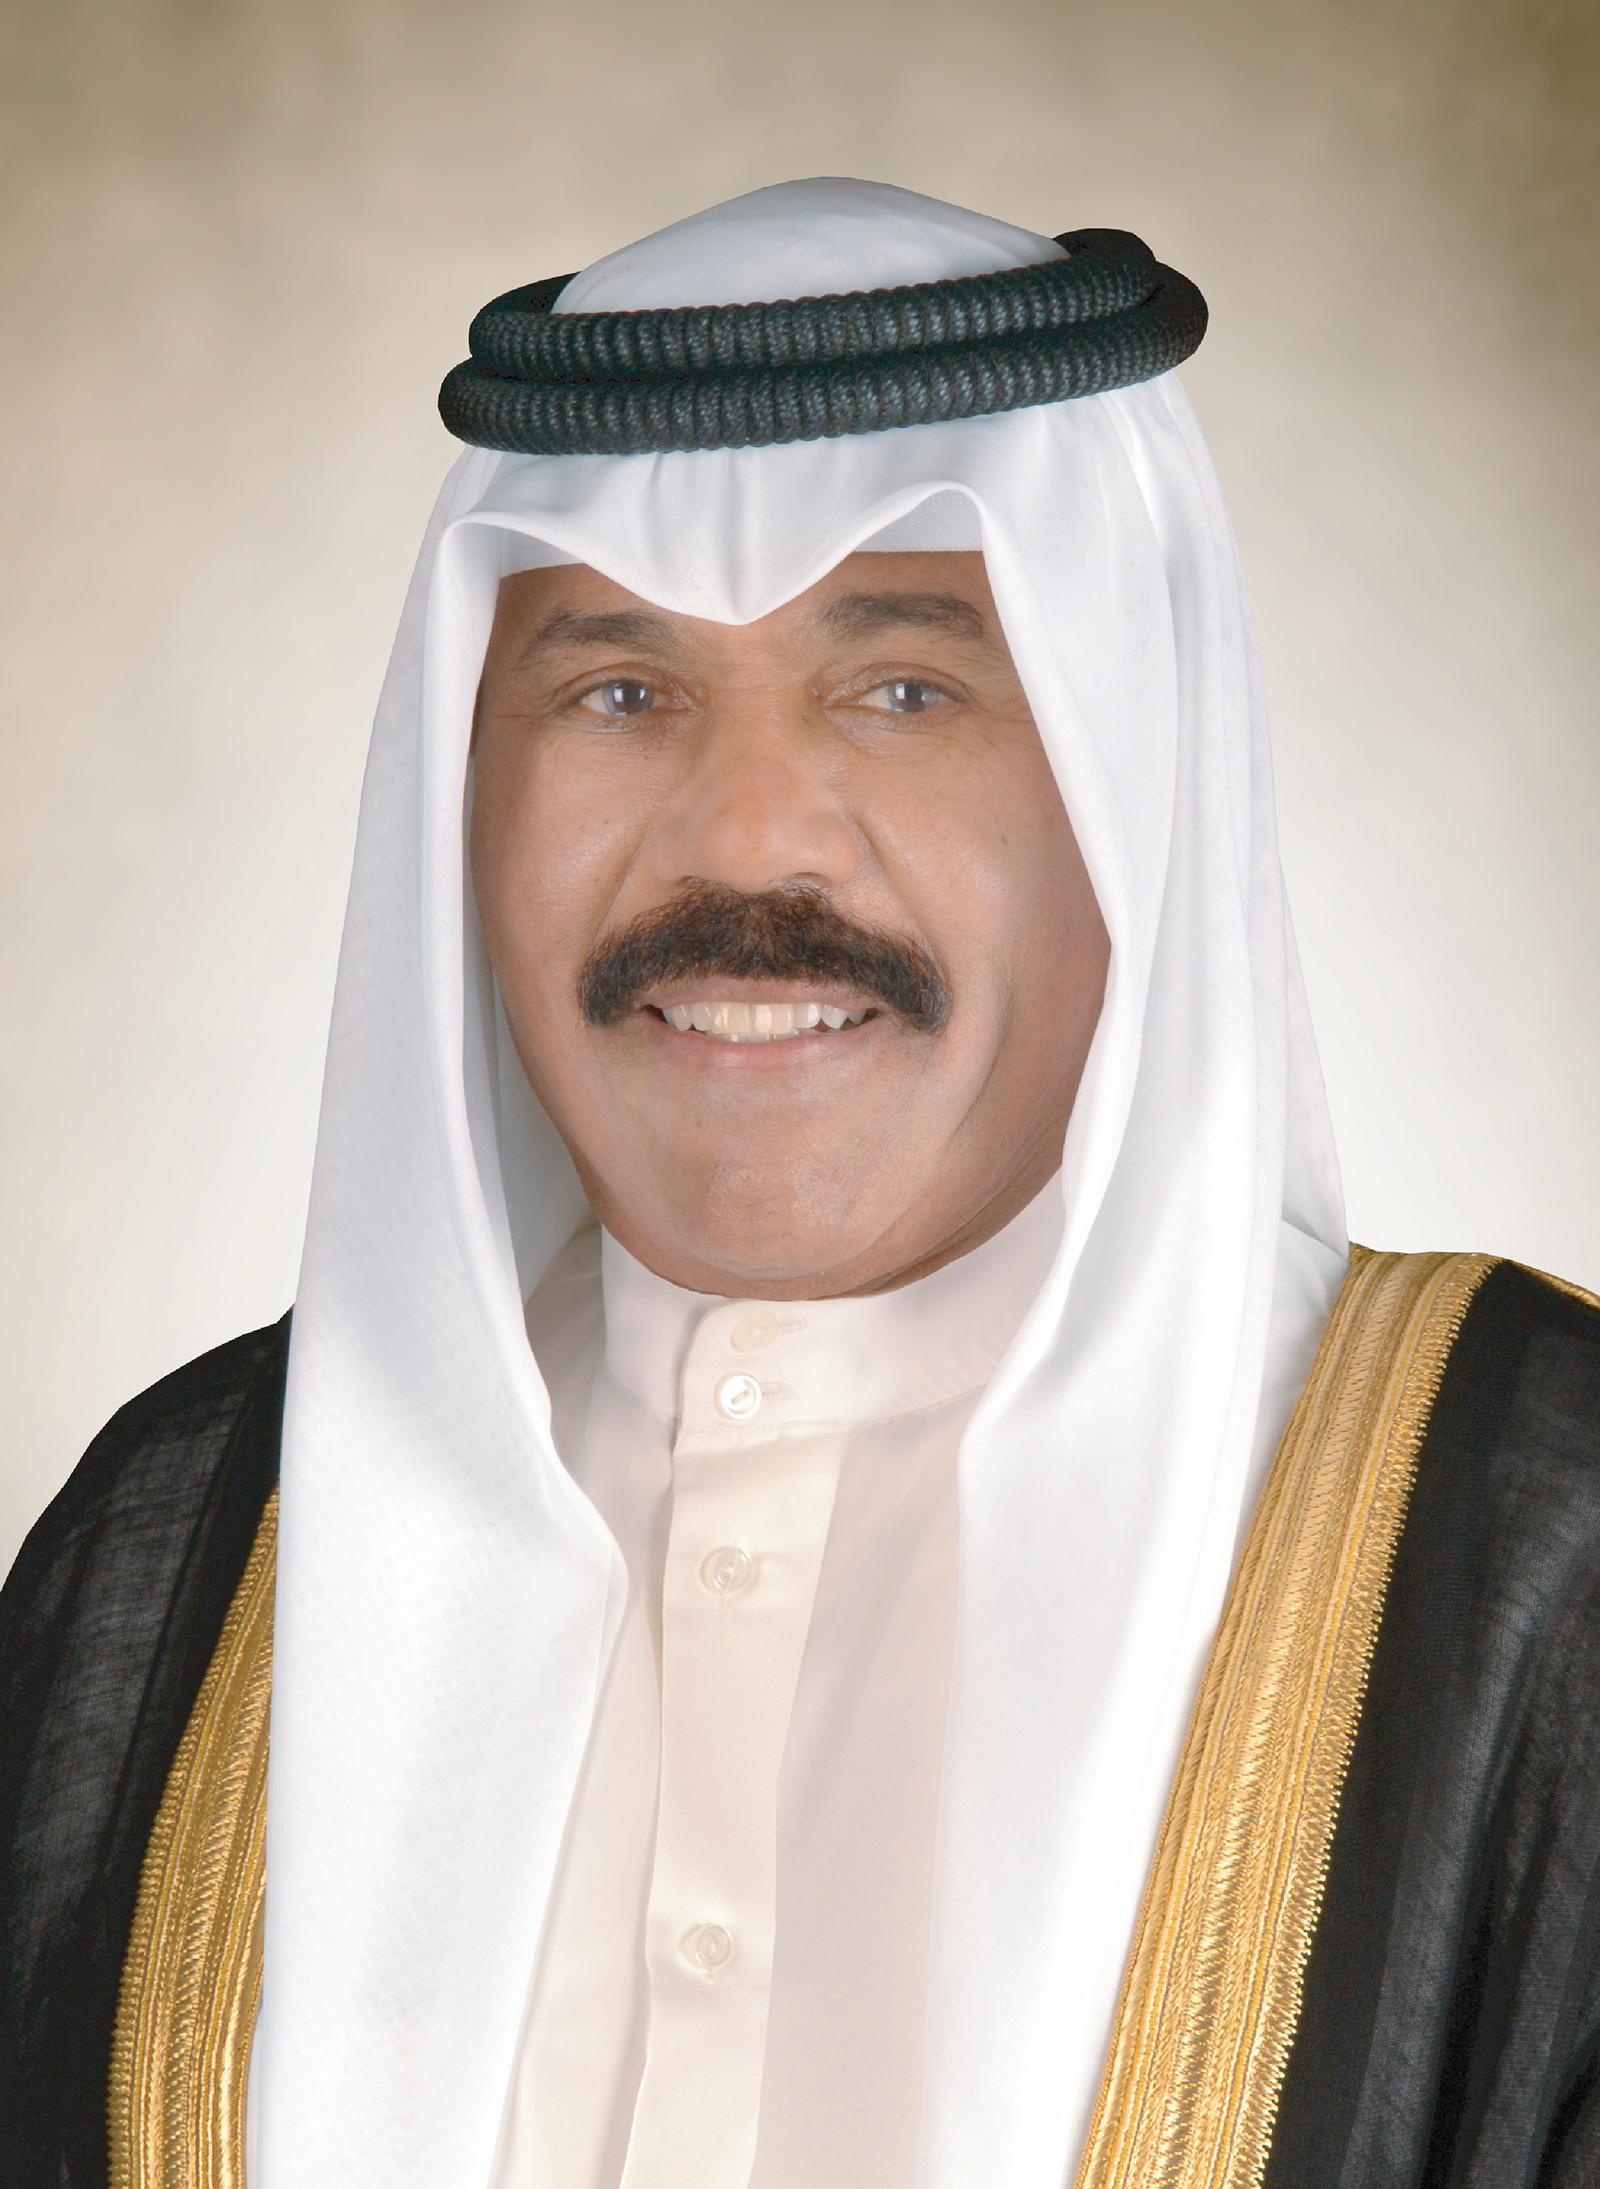  سمو أمير البلاد يبعث ببرقية تهنئة إلى رئيس دولة الإمارات العربية المتحدة الشقيقة بالعيد الوطني